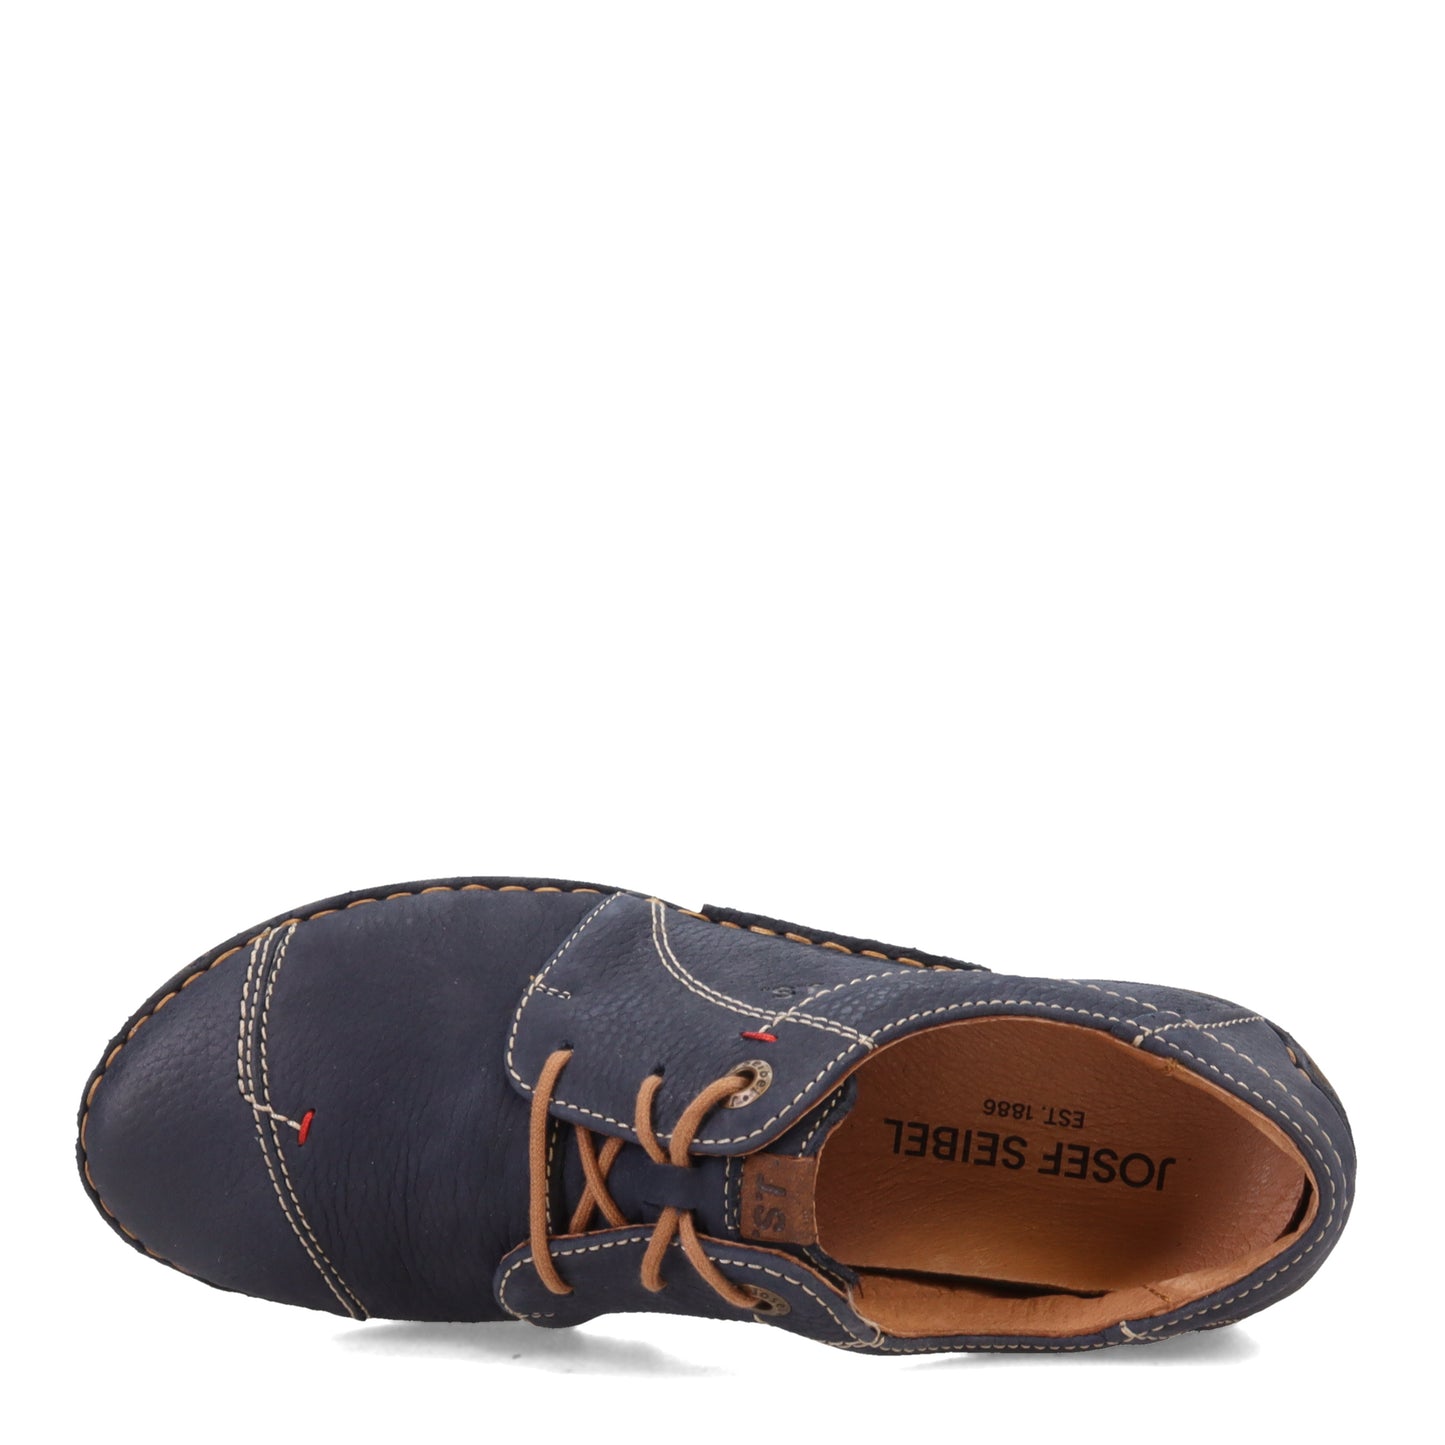 Peltz Shoes  Women's Josef Seibel Fergey 20 Oxford OCEAN 59692-796530